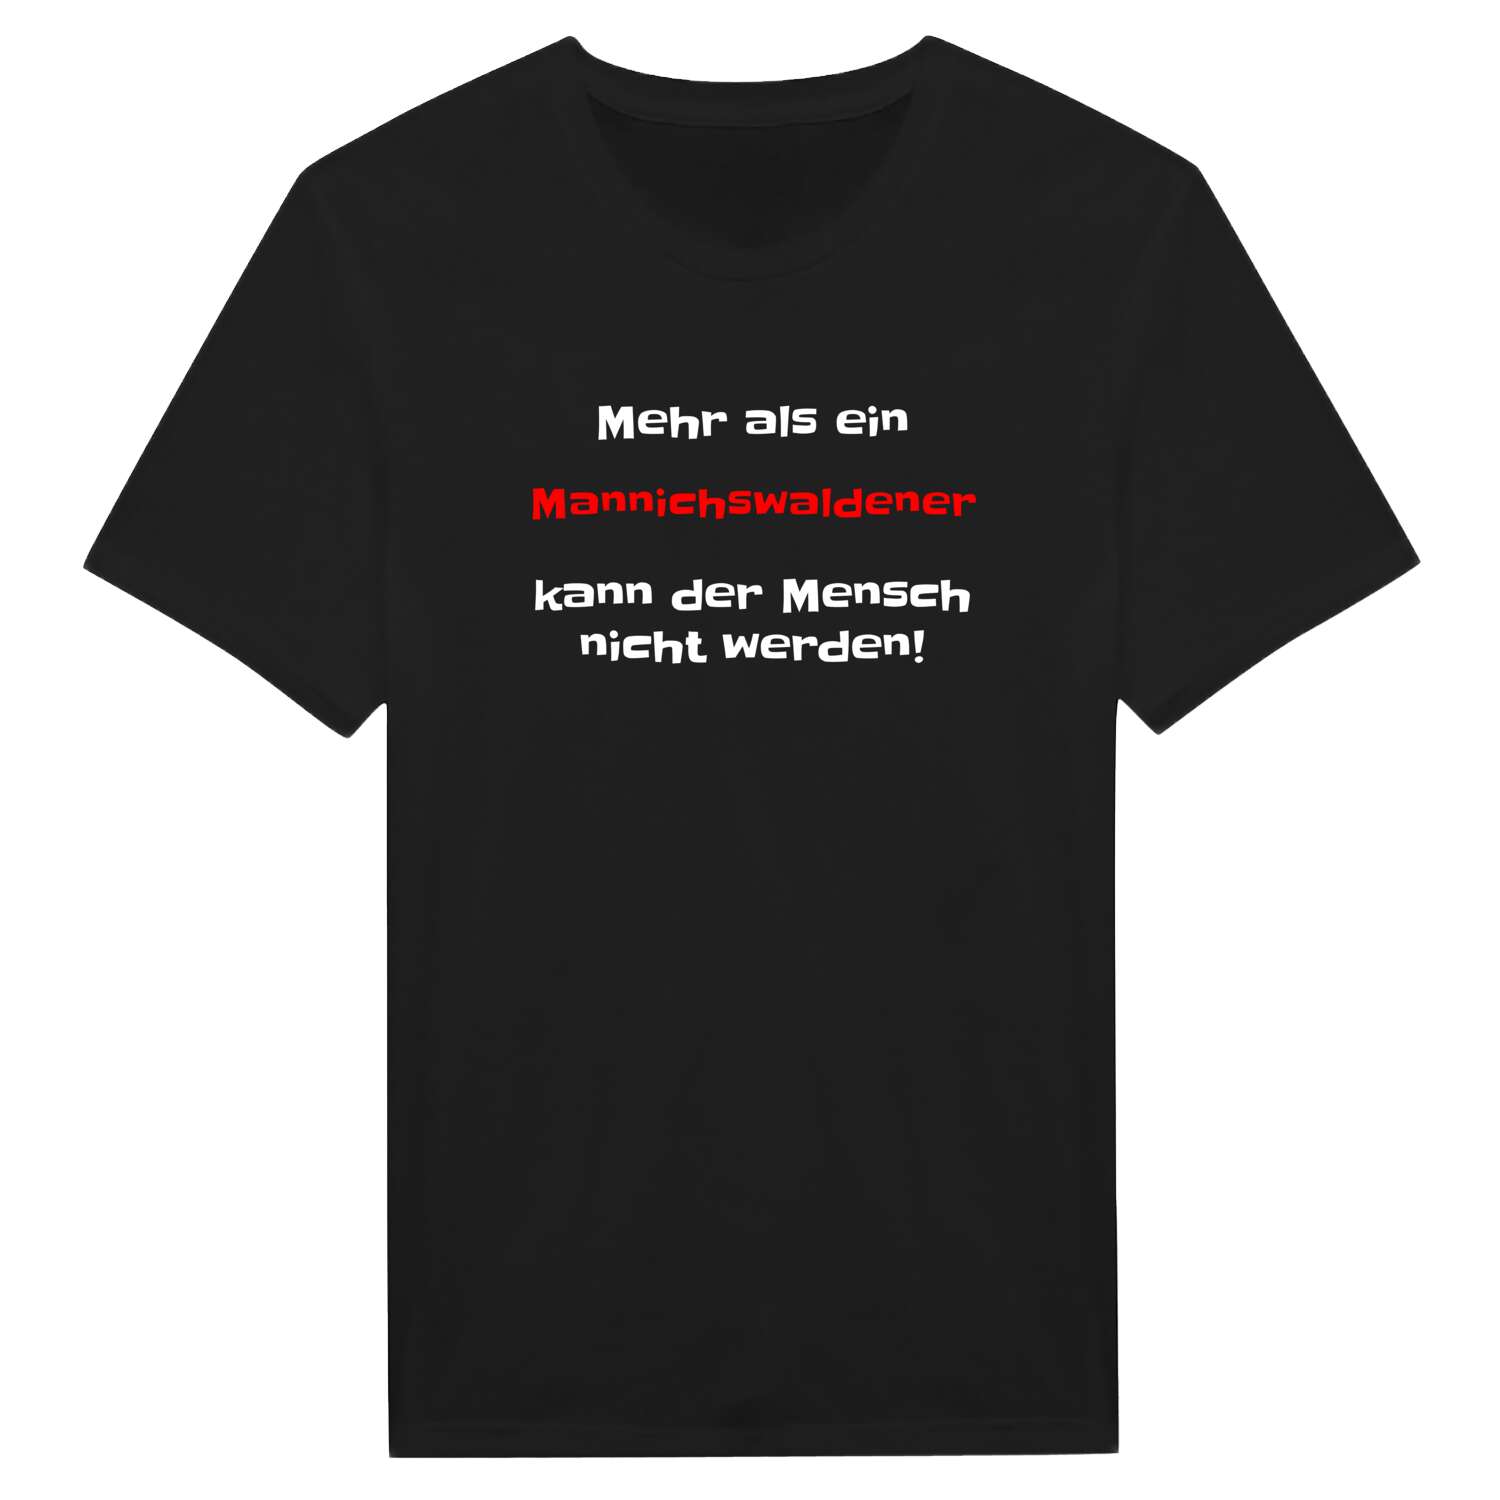 Mannichswalde T-Shirt »Mehr als ein«